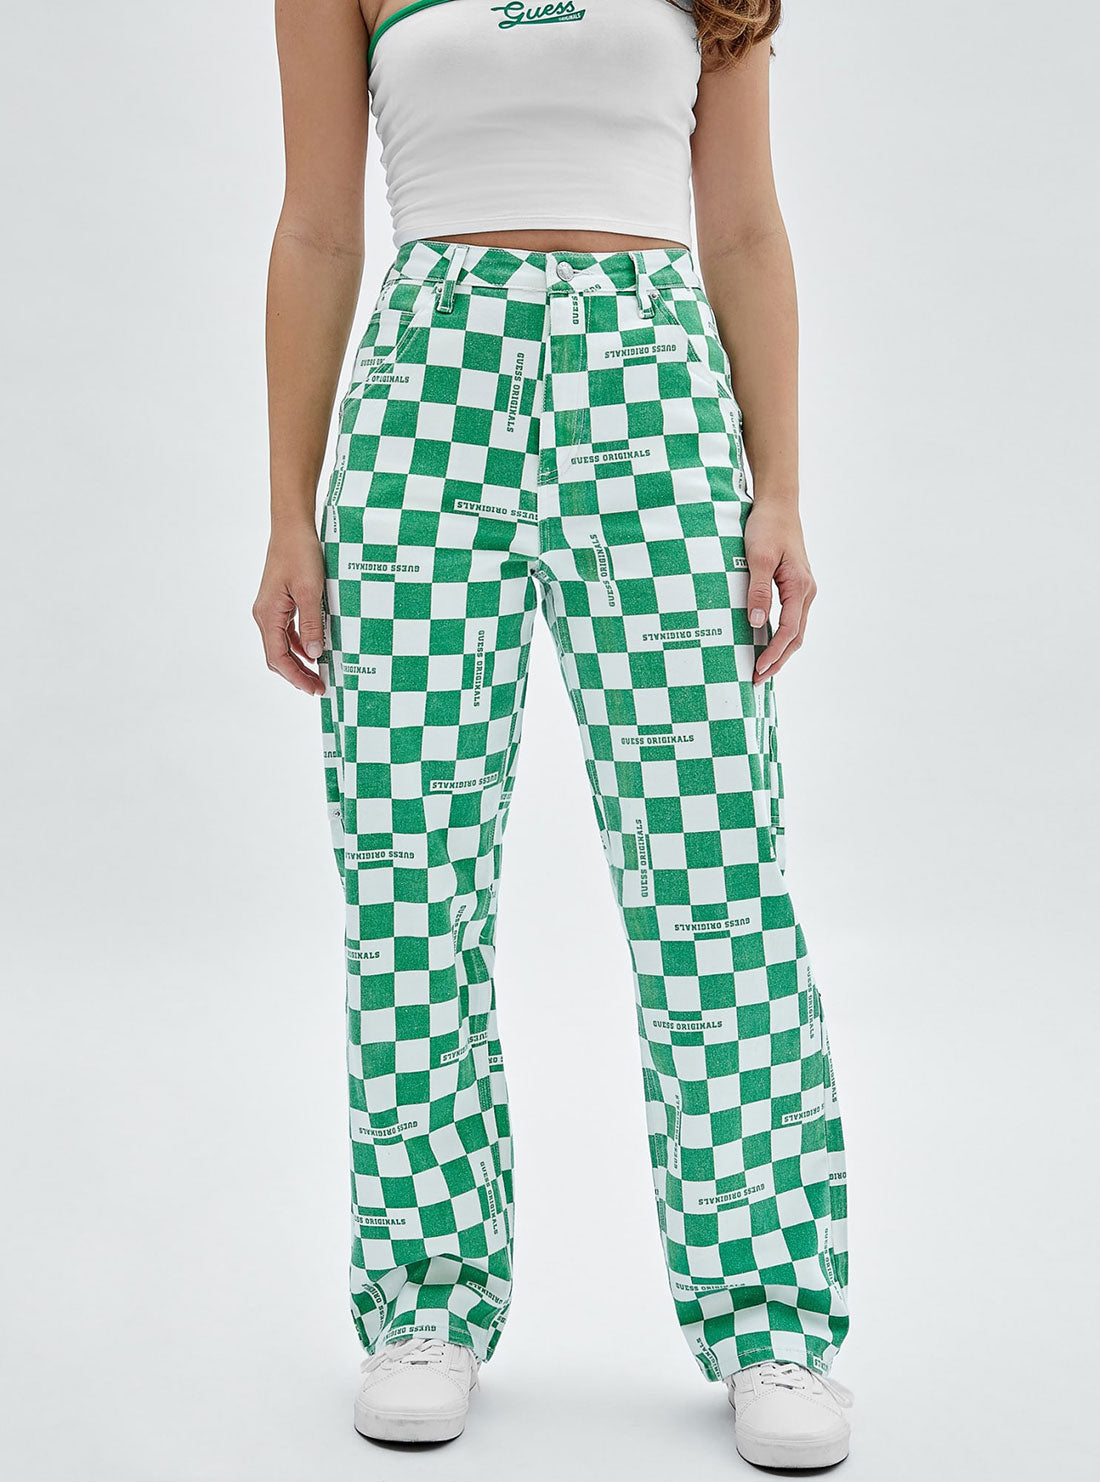 GUESS Women's Guess Originals Green Checkered Carpenter Pants W2YG10D4RG0 Front View